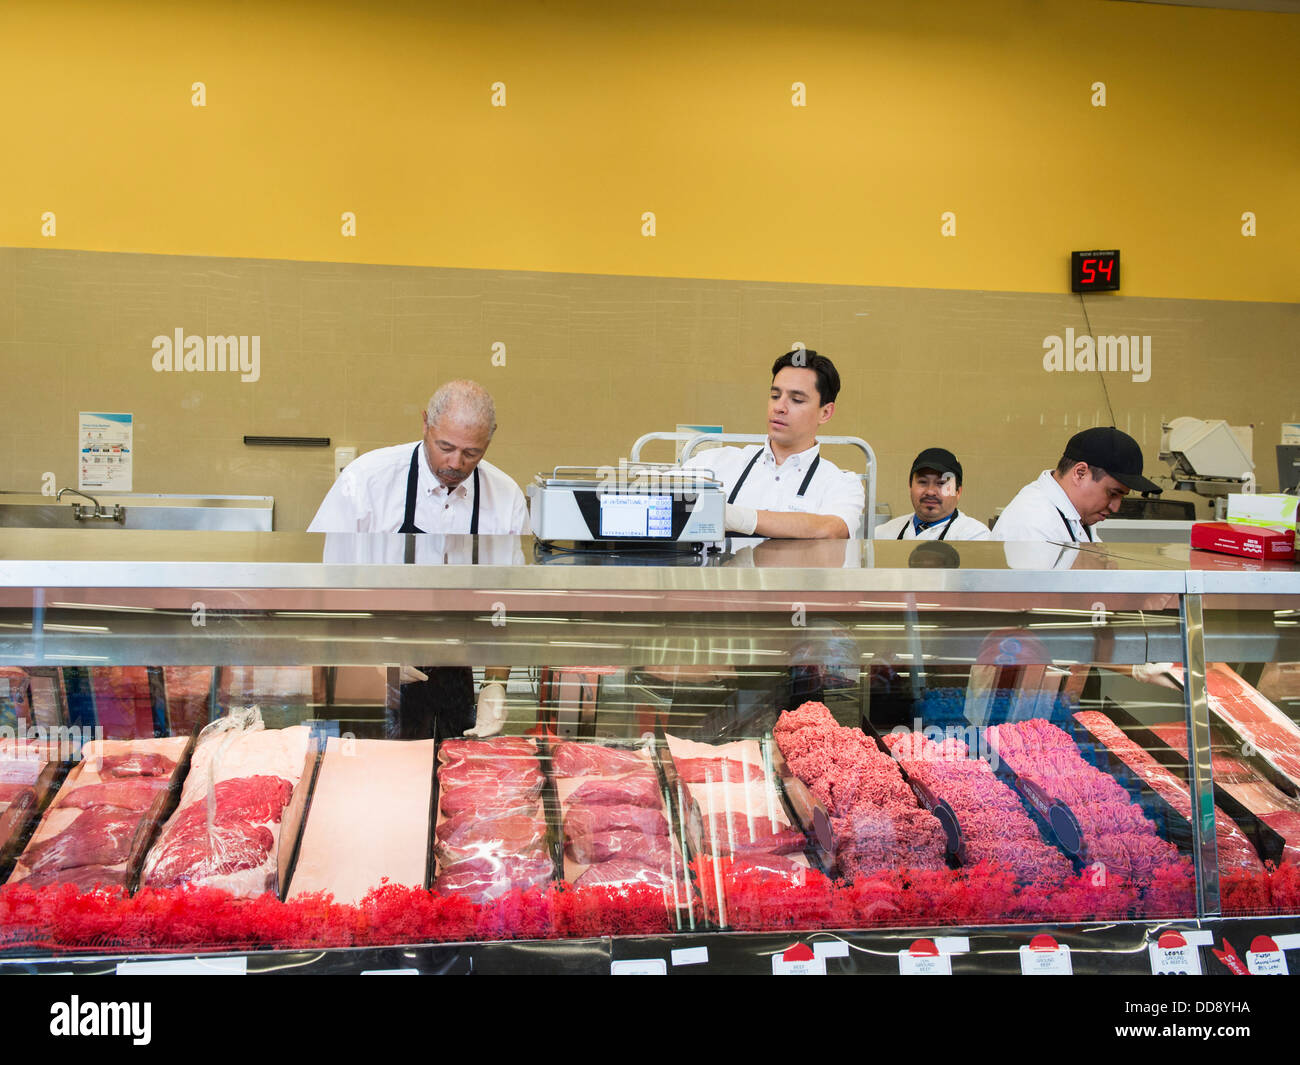 Carnicerías en mostradores de carne de supermercado Foto de stock